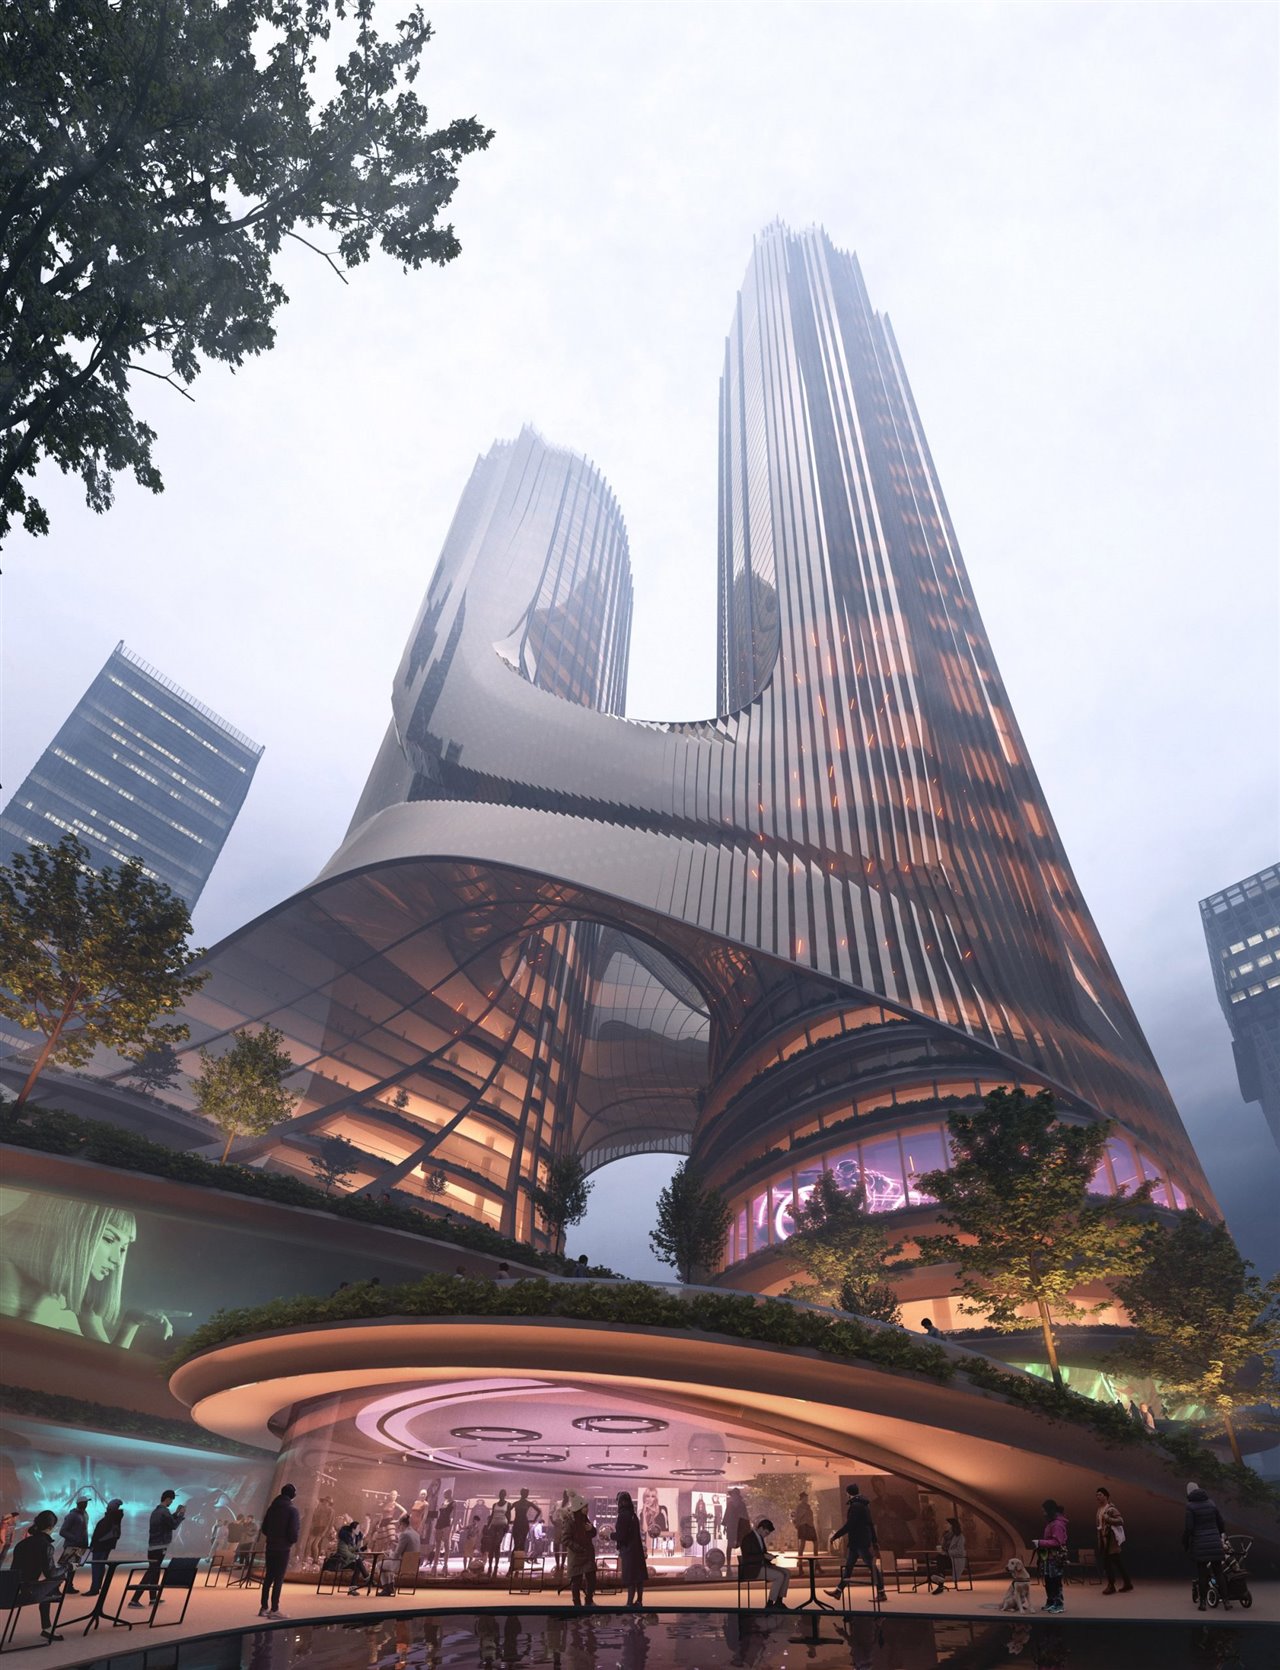 El nuevo rascacielos será uno de los centros neurálgicos de la ciudad, y para ello contará con hoteles, galerías de arte y otro tipo de instalaciones.